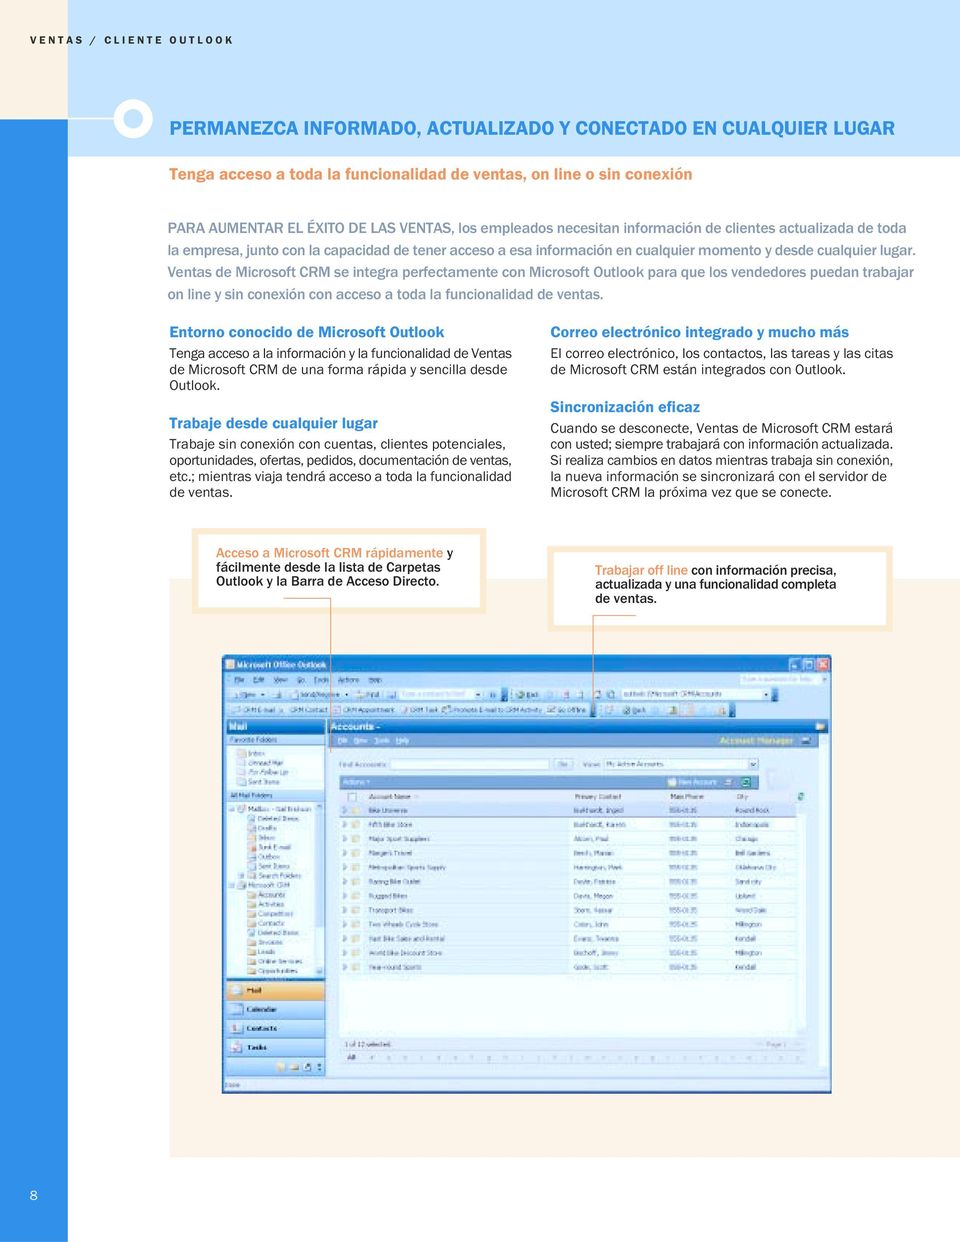 Ventas de Microsoft CRM se integra perfectamente con Microsoft Outlook para que los vendedores puedan trabajar on line y sin conexión con acceso a toda la funcionalidad de ventas.